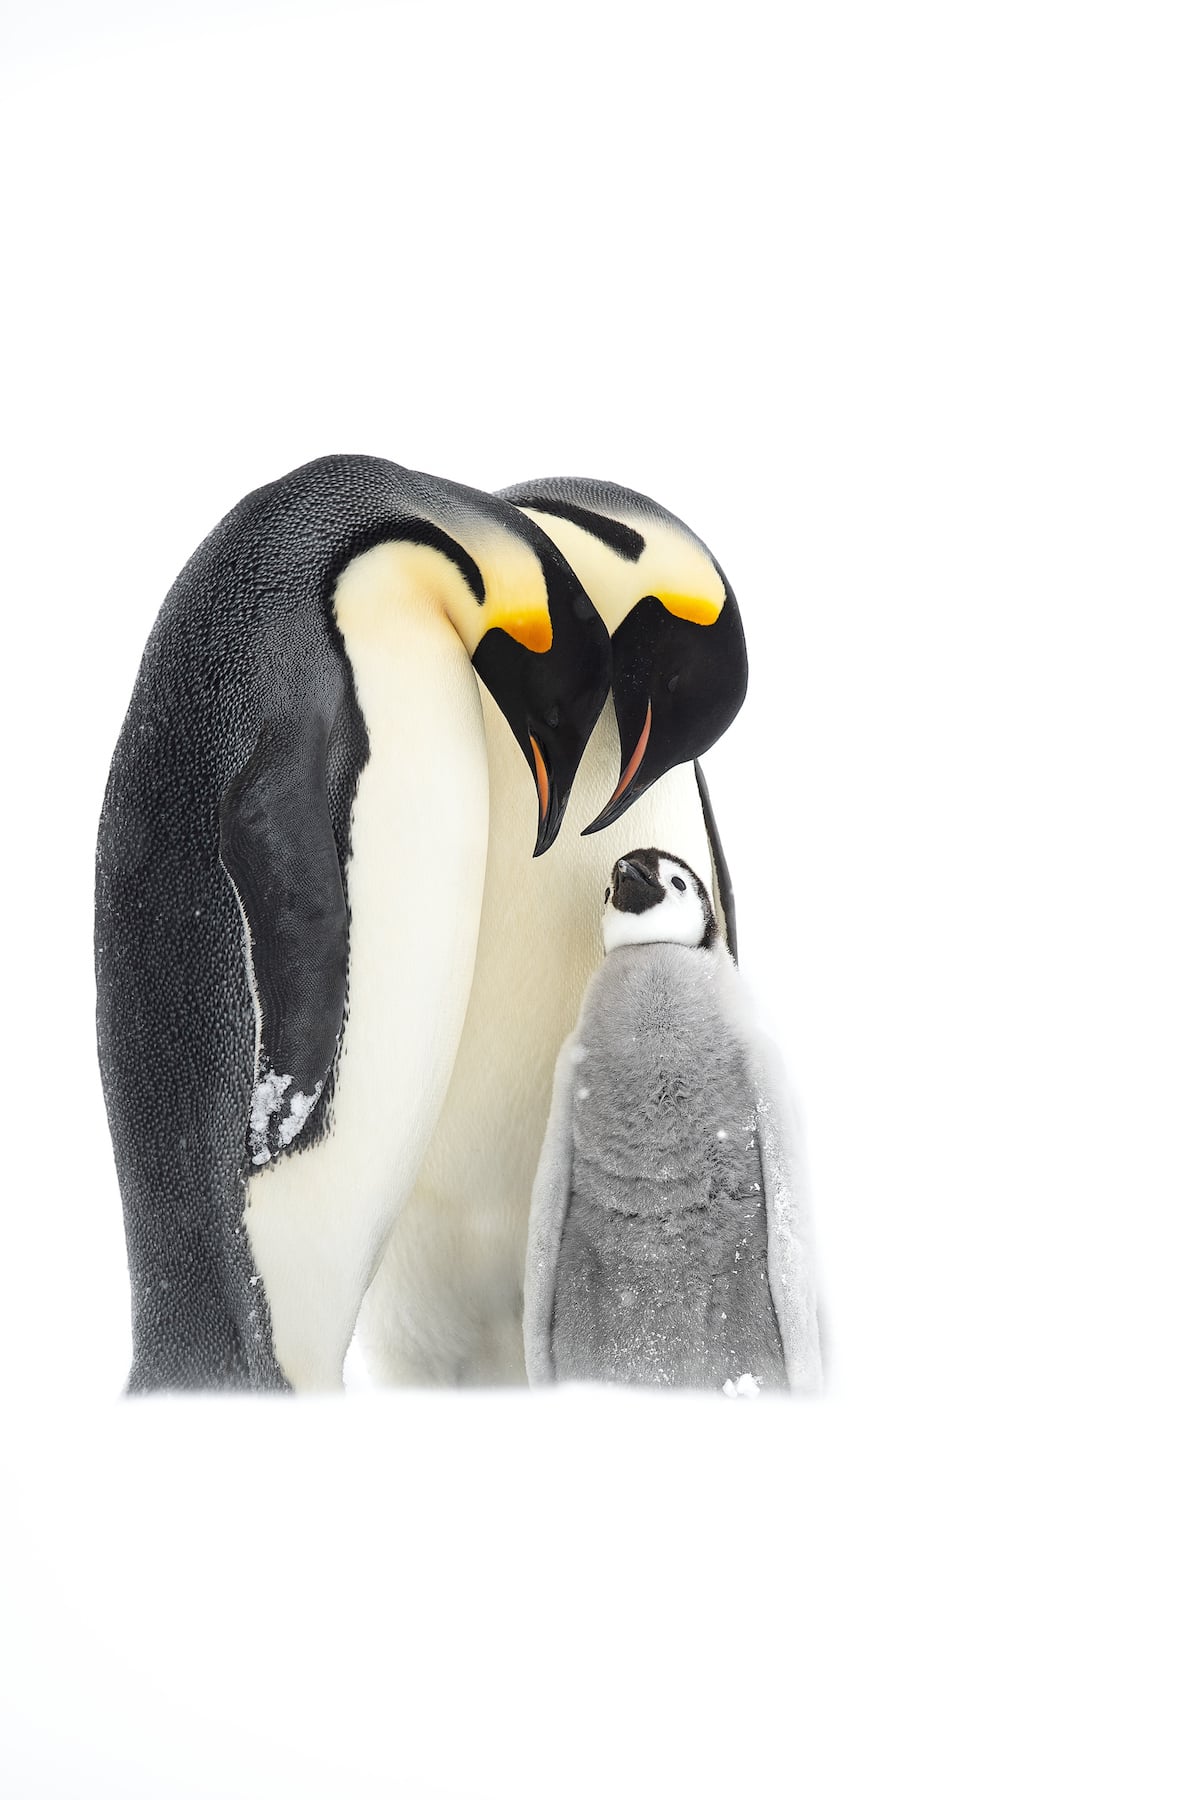 familia de pinguinos emperador